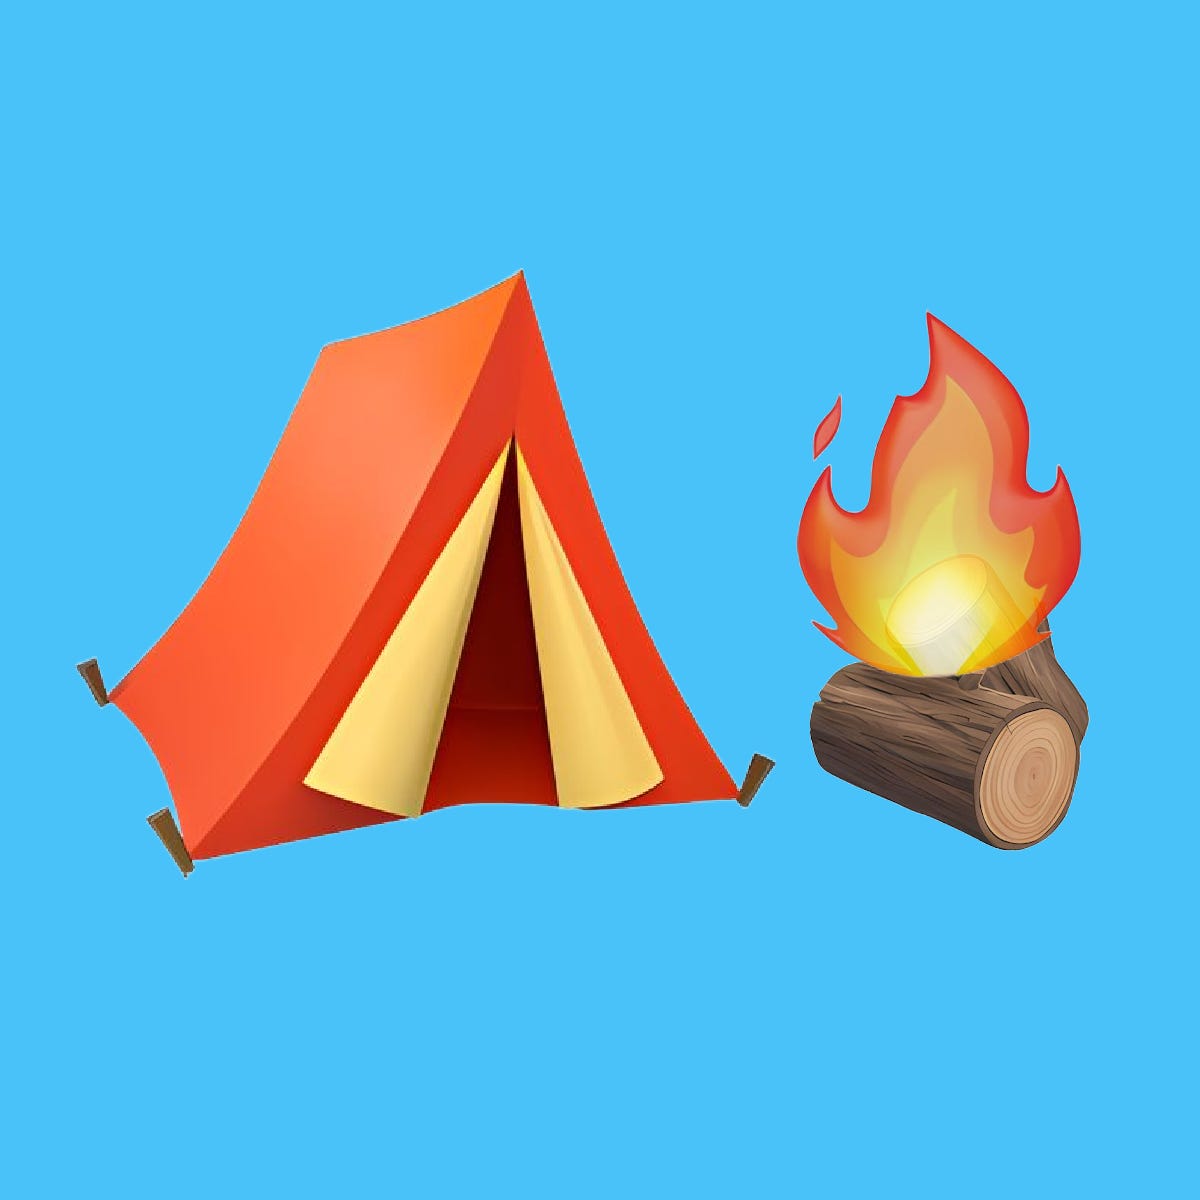 Substack Campfire \ud83e\udeb5\ud83d\udd25 ⛺